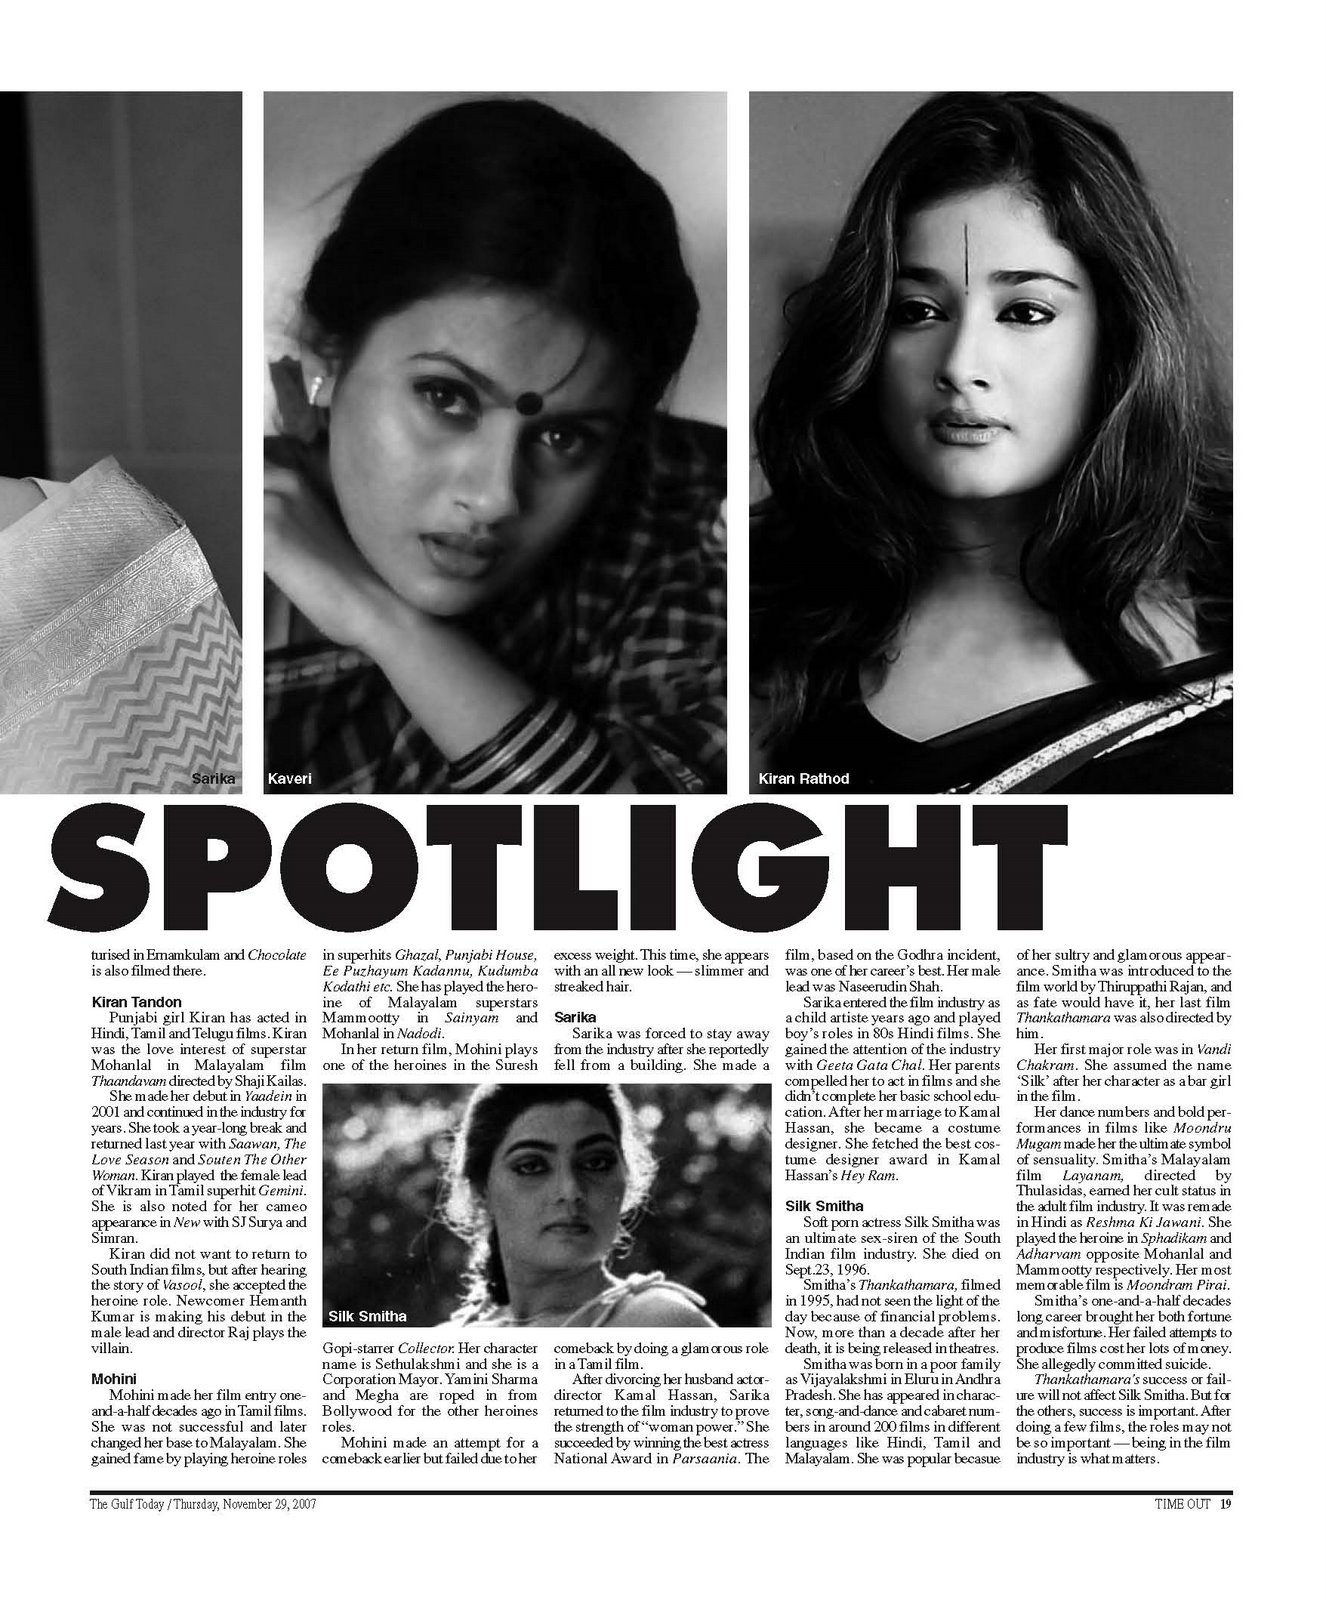 Madhuri Dixit Sex Bp All - cinema4uTV: LURE OF THE SPOTLIGHT-MADHURI NENE DIXIT, KAVERI, SARI, KIRAN  RATHOD, MOHINI AND SARIKA